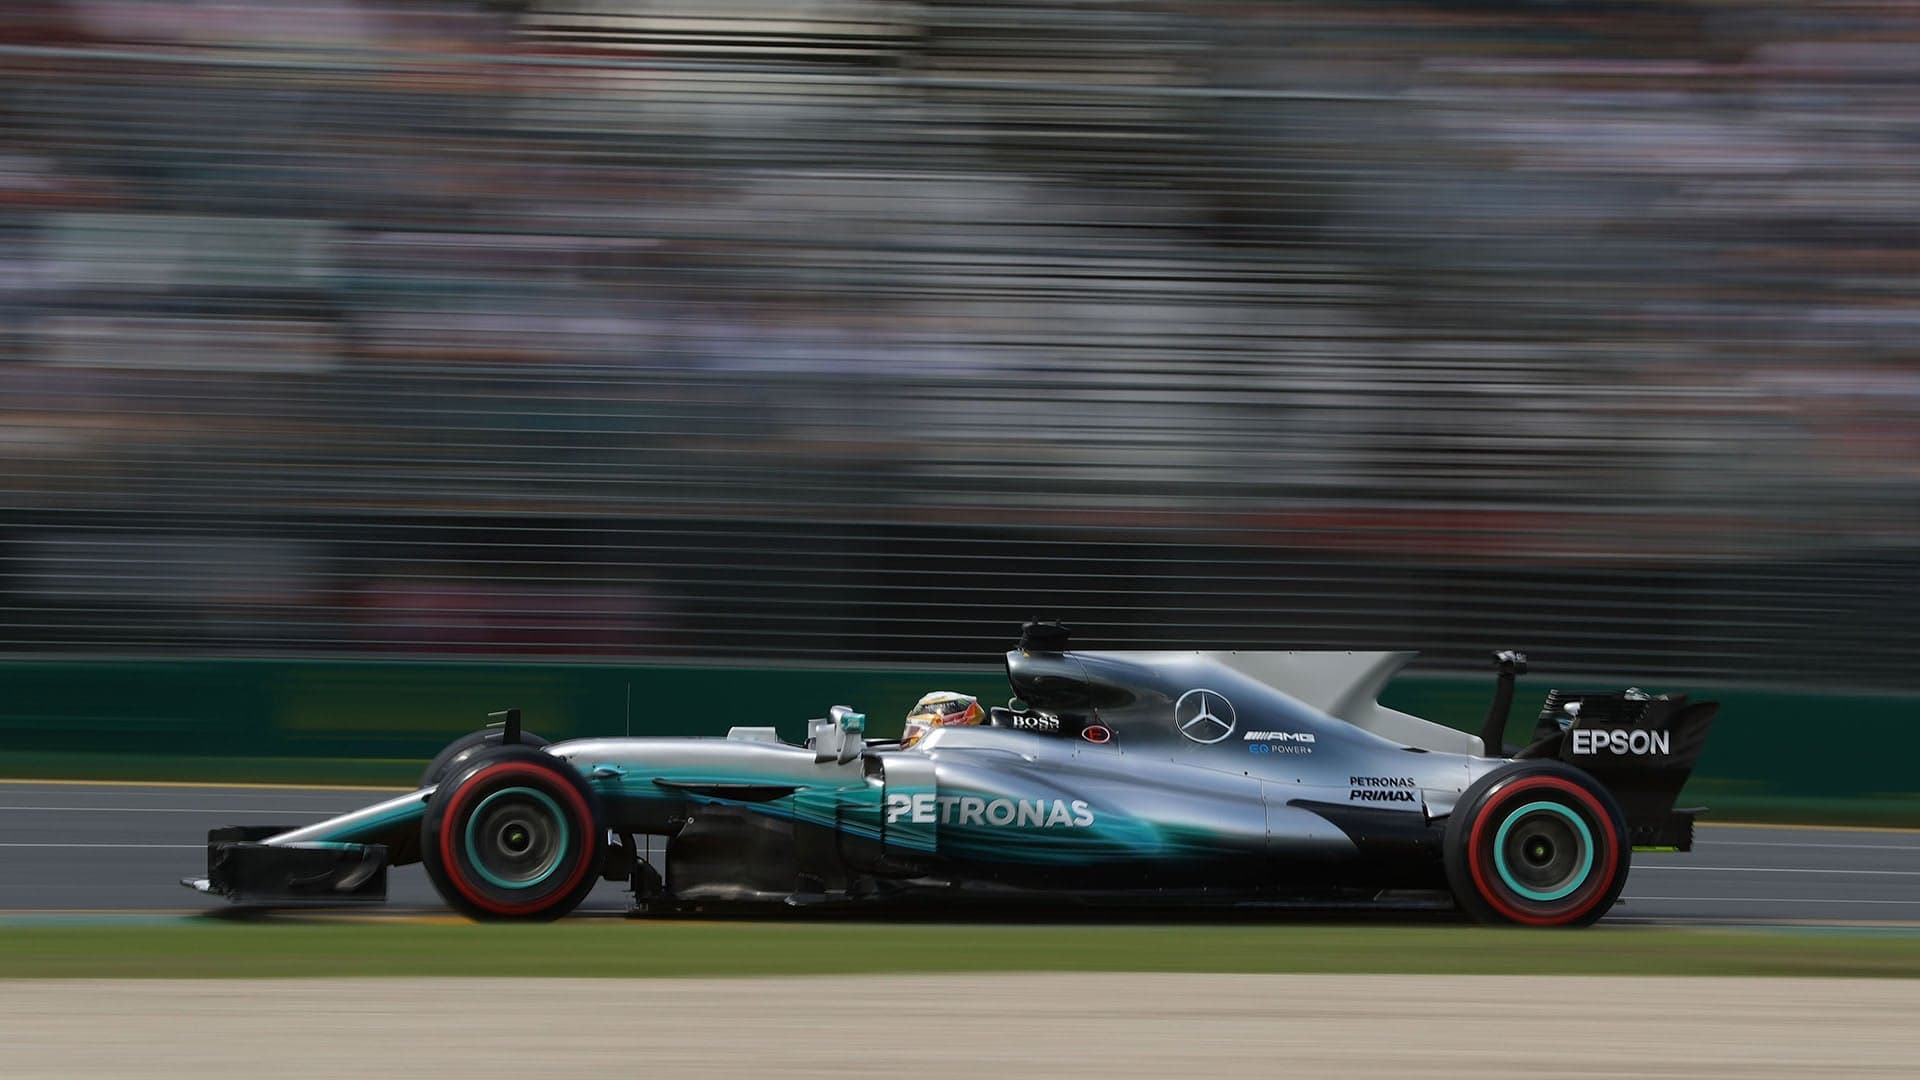 Lewis Hamilton Takes Pole In Australia With Record Breaking Lap